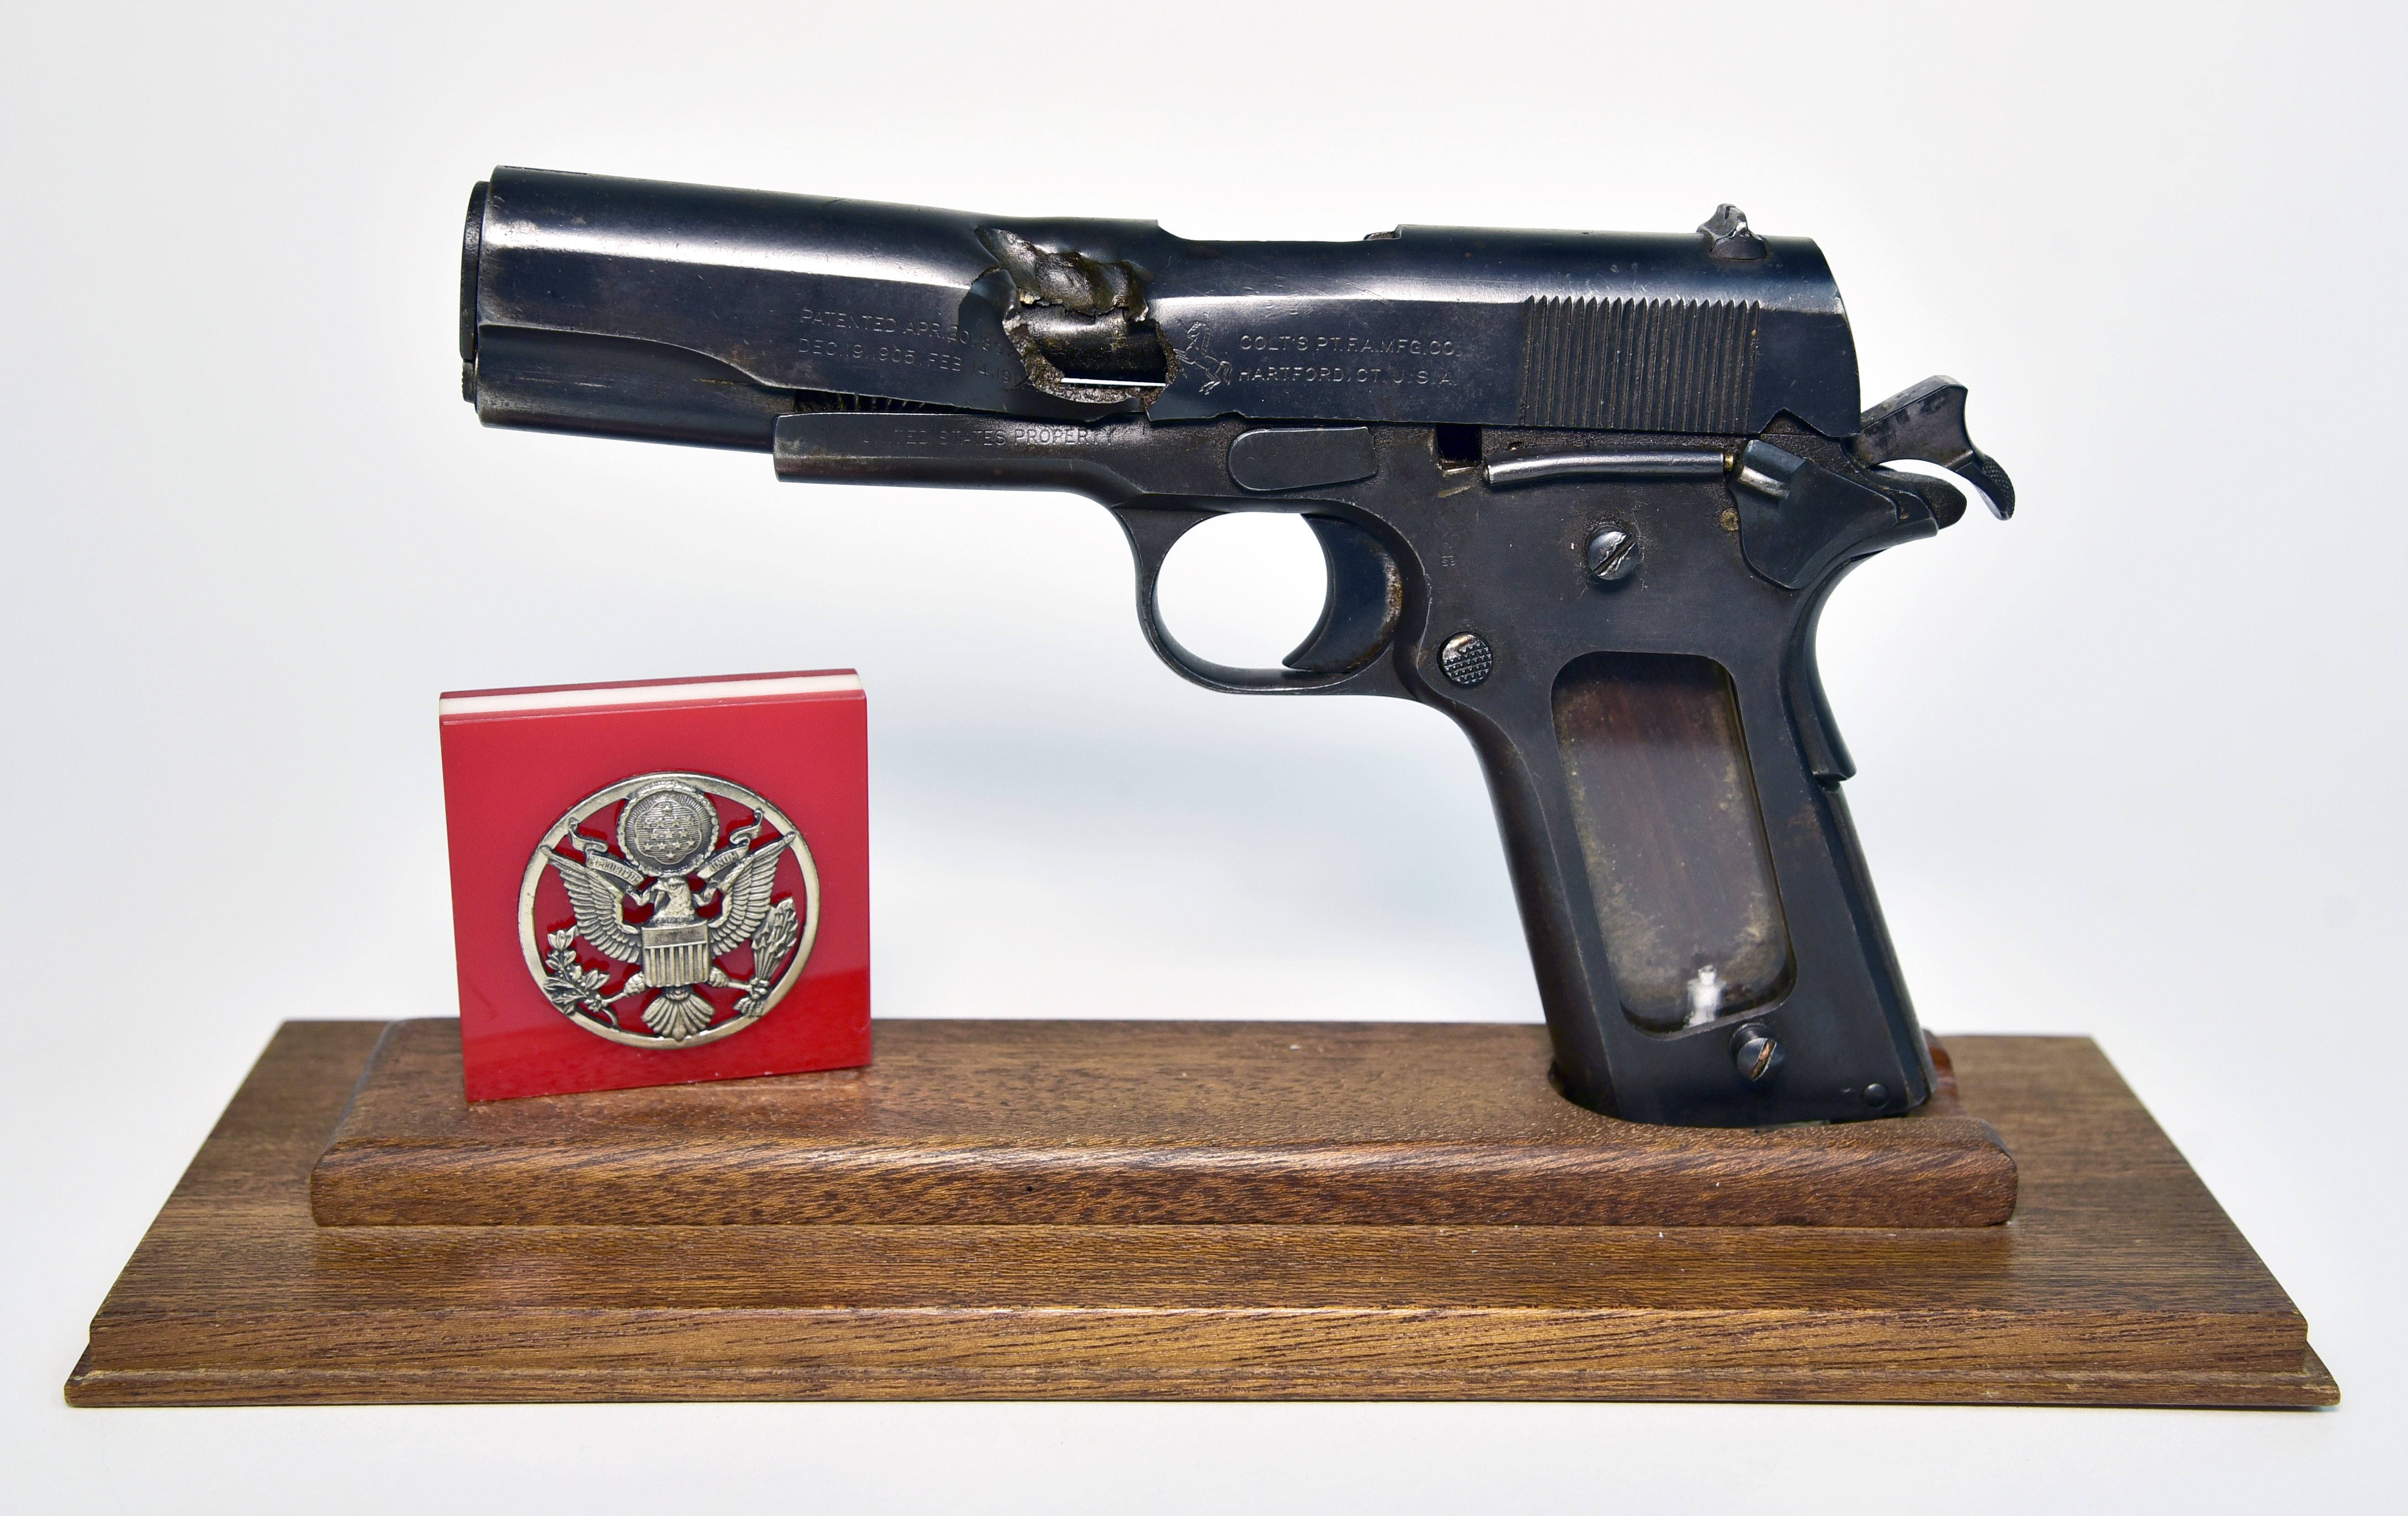 m1911 pistol ww2